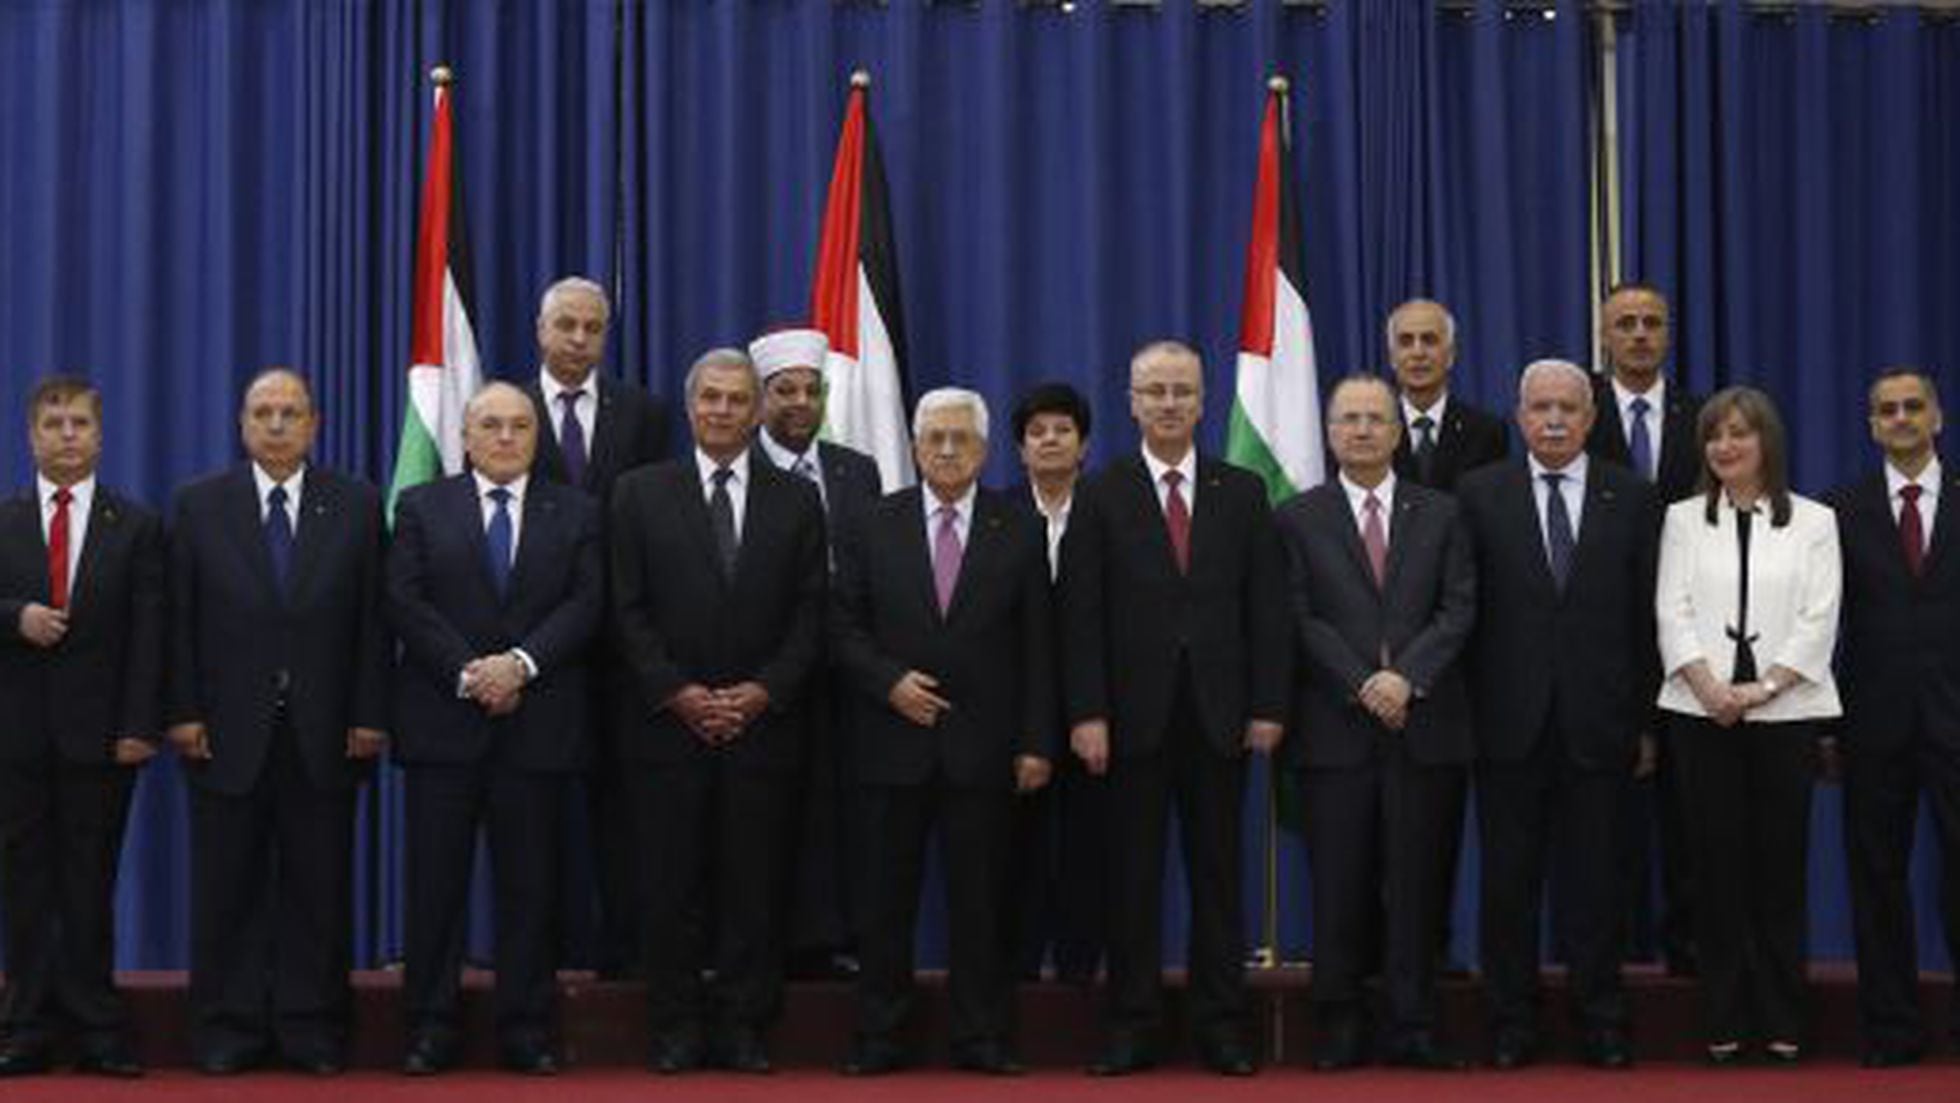 Governo firmou cooperação com Autoridade Palestina, não com o Hamas